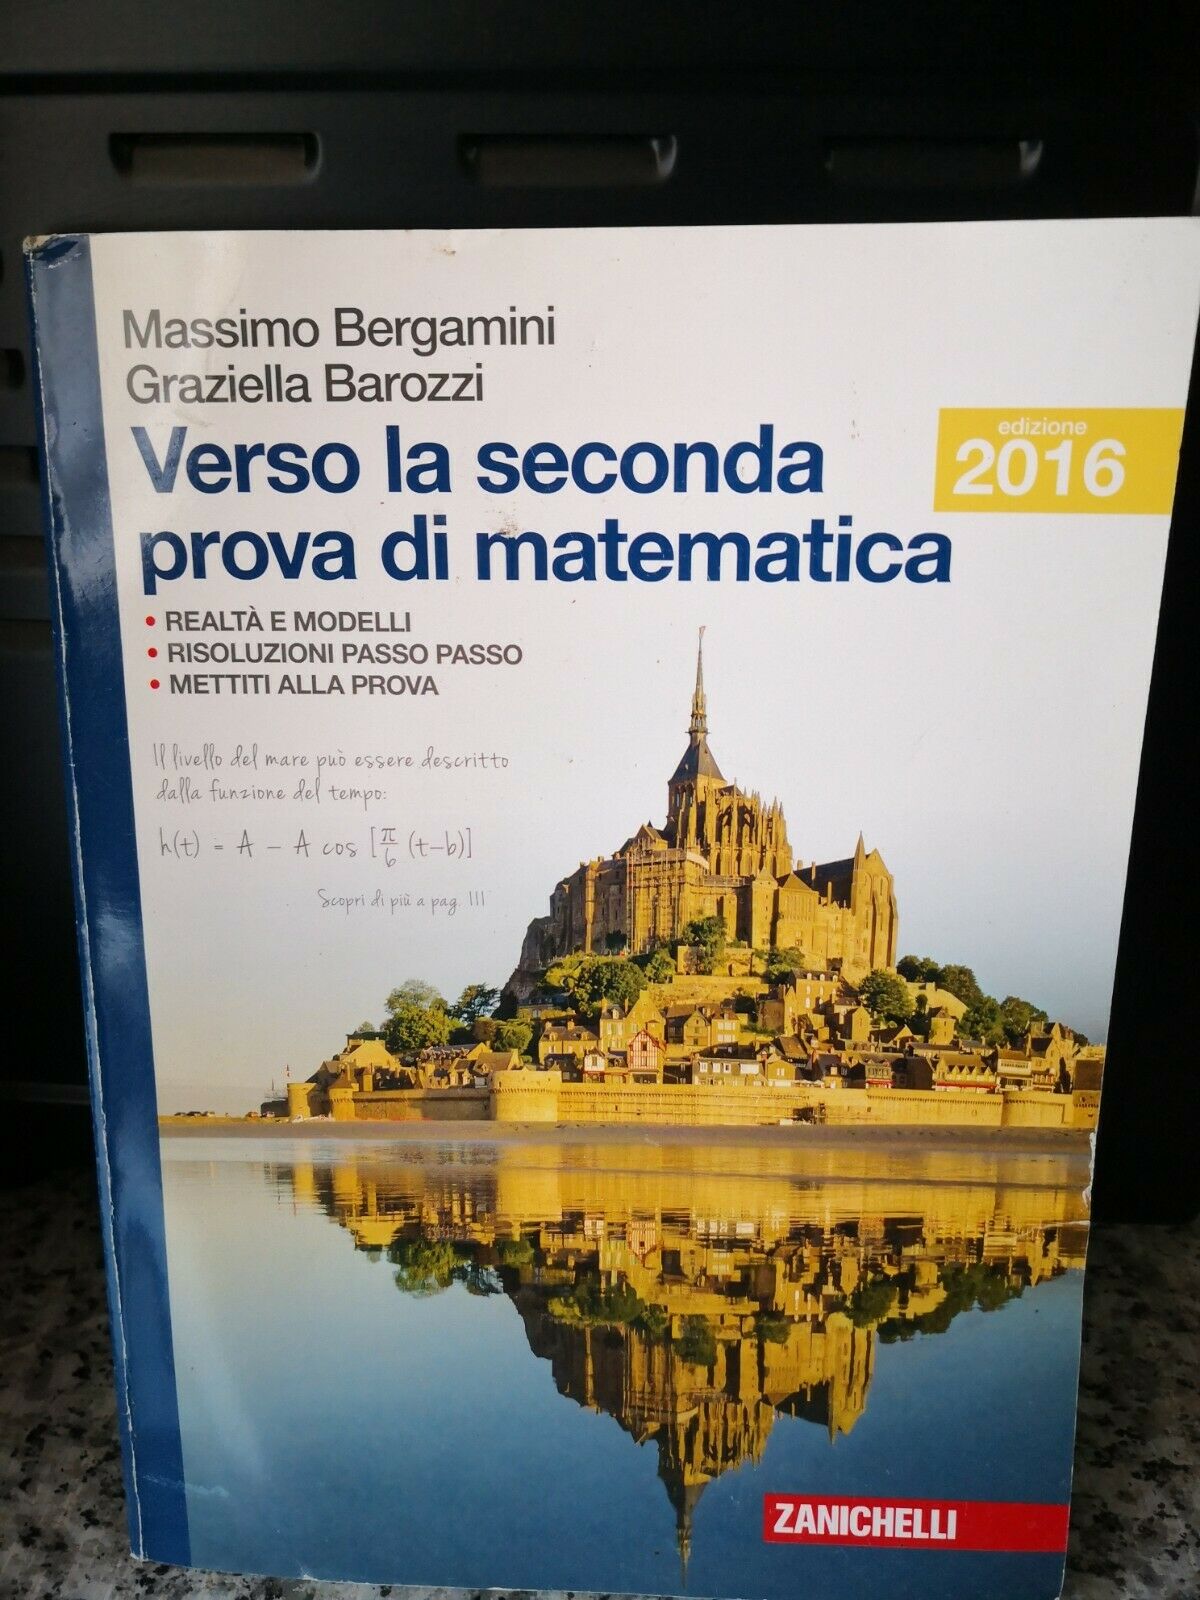 Verso la seconda prova di matematica  di V. Bergamini , G.borozzi,  2016, -F